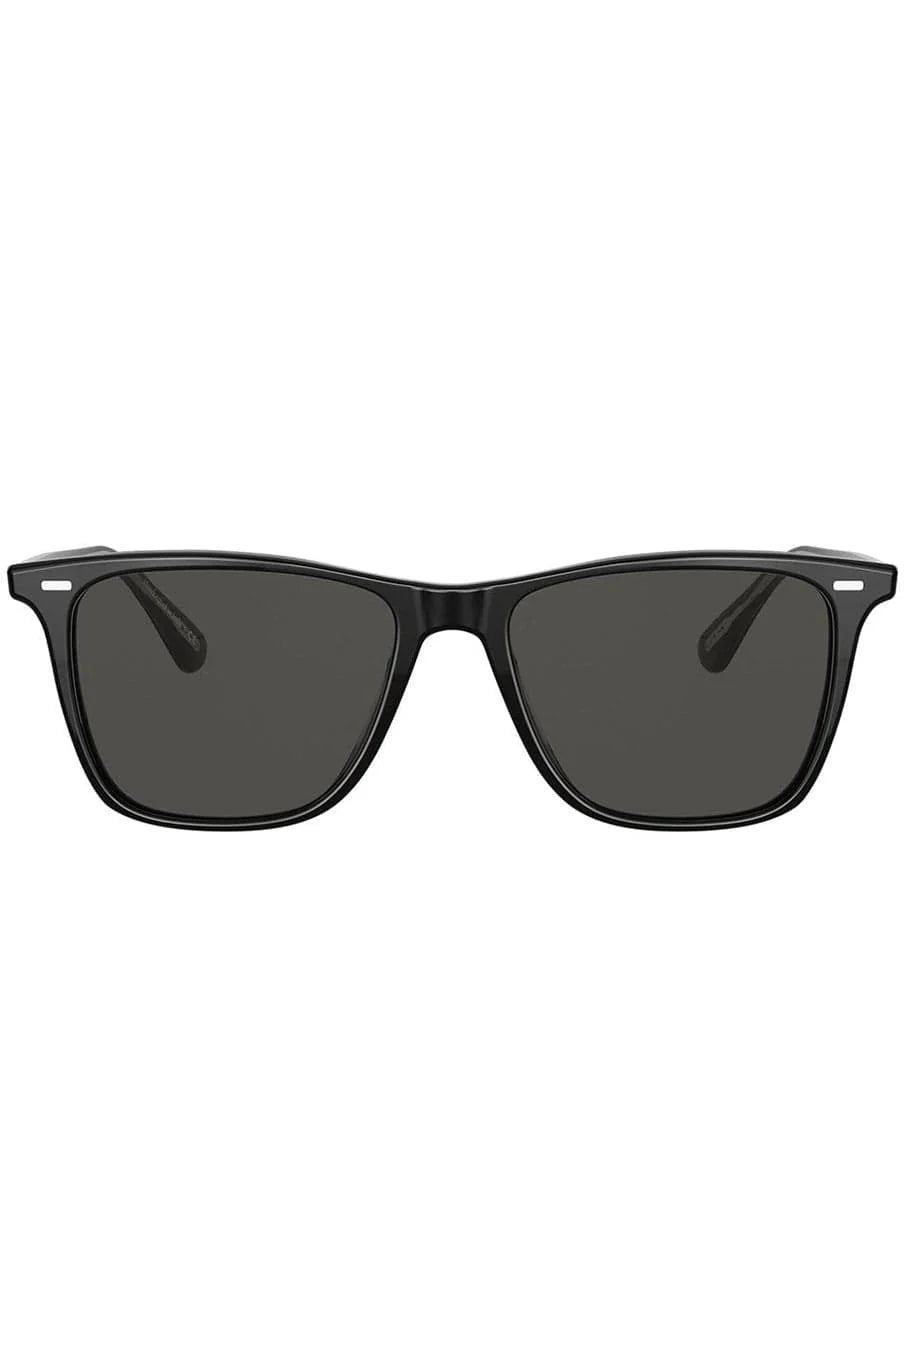 Oliver Peoples Ollis Sun OV 5437SU Sunglasses Black Midnight Polarized 54mm lenses NEW